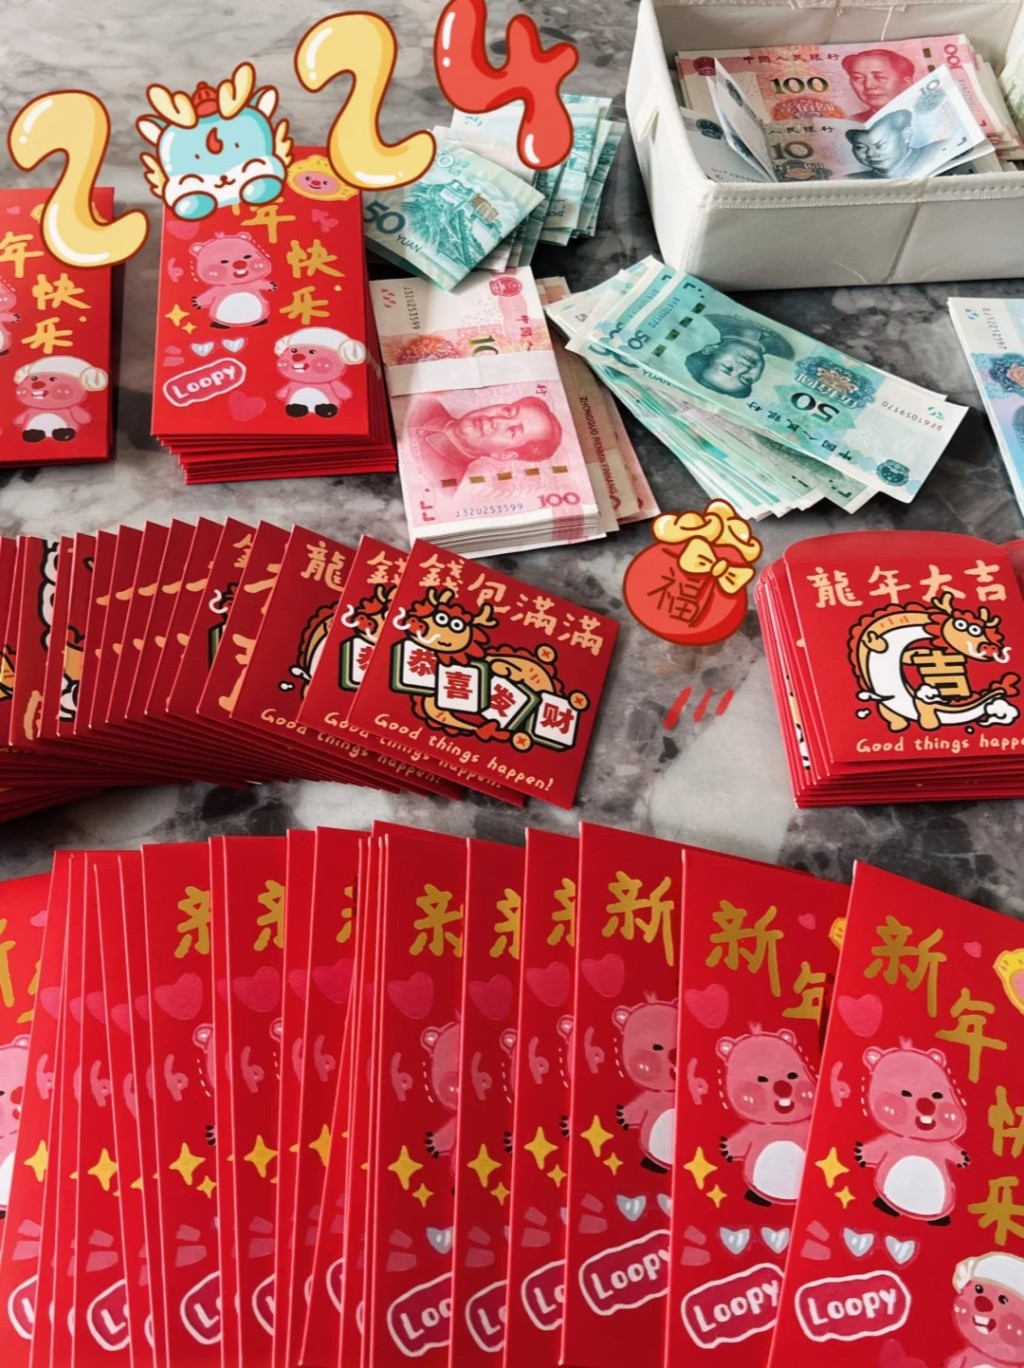 许多华人在农历新年也要准备大笔新钱封利是。小红书